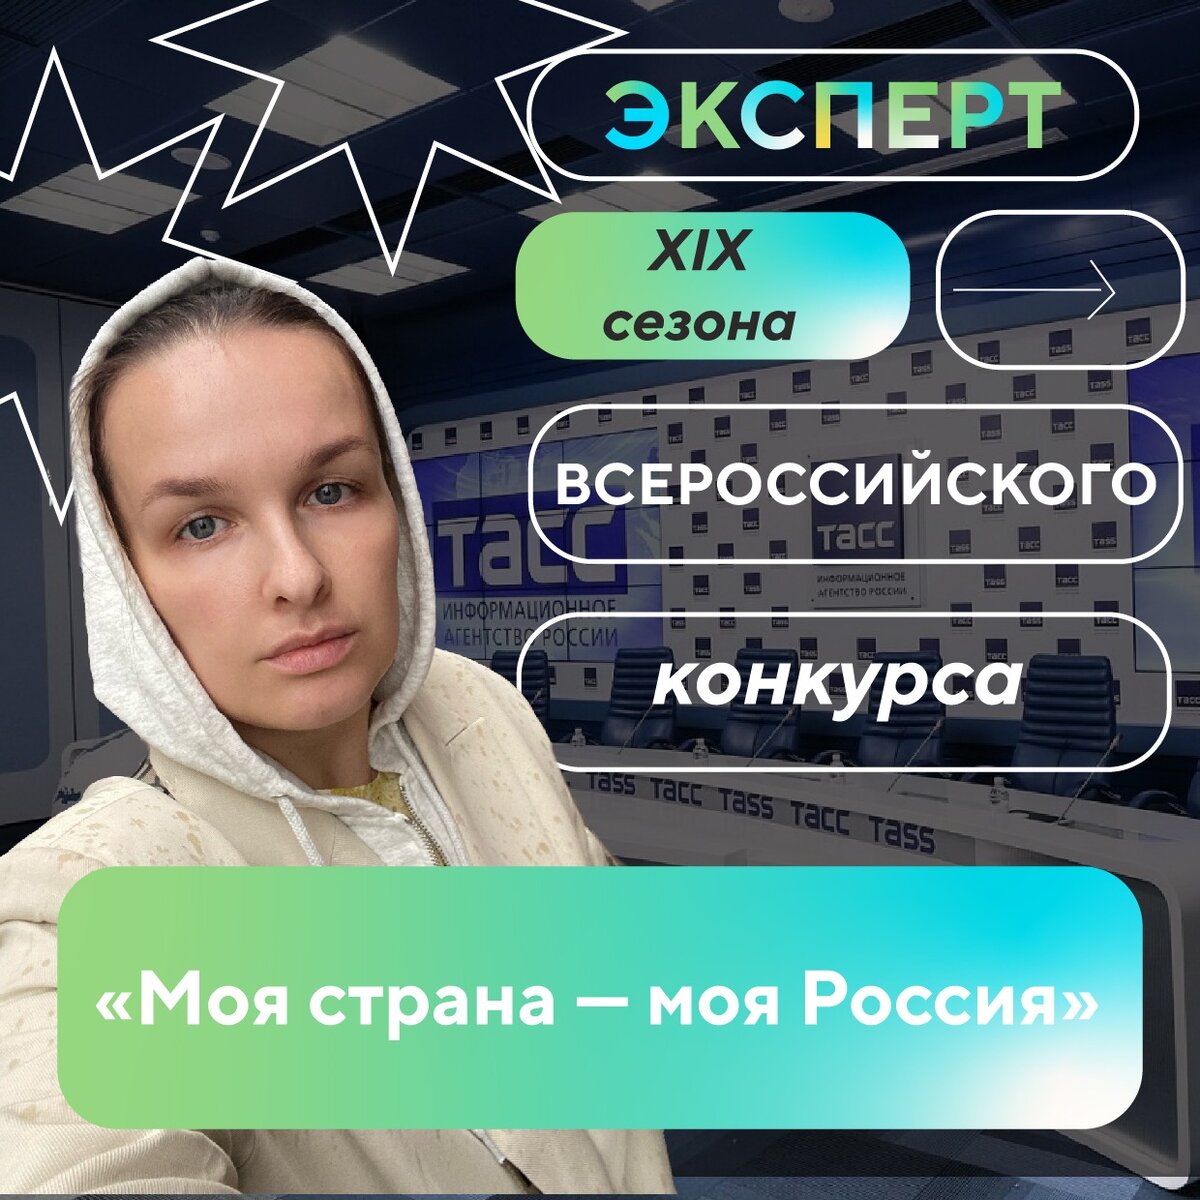 Яна Сивирилина получила статус эксперта XIX сезона Всероссийского конкурса «Моя страна — моя Россия».